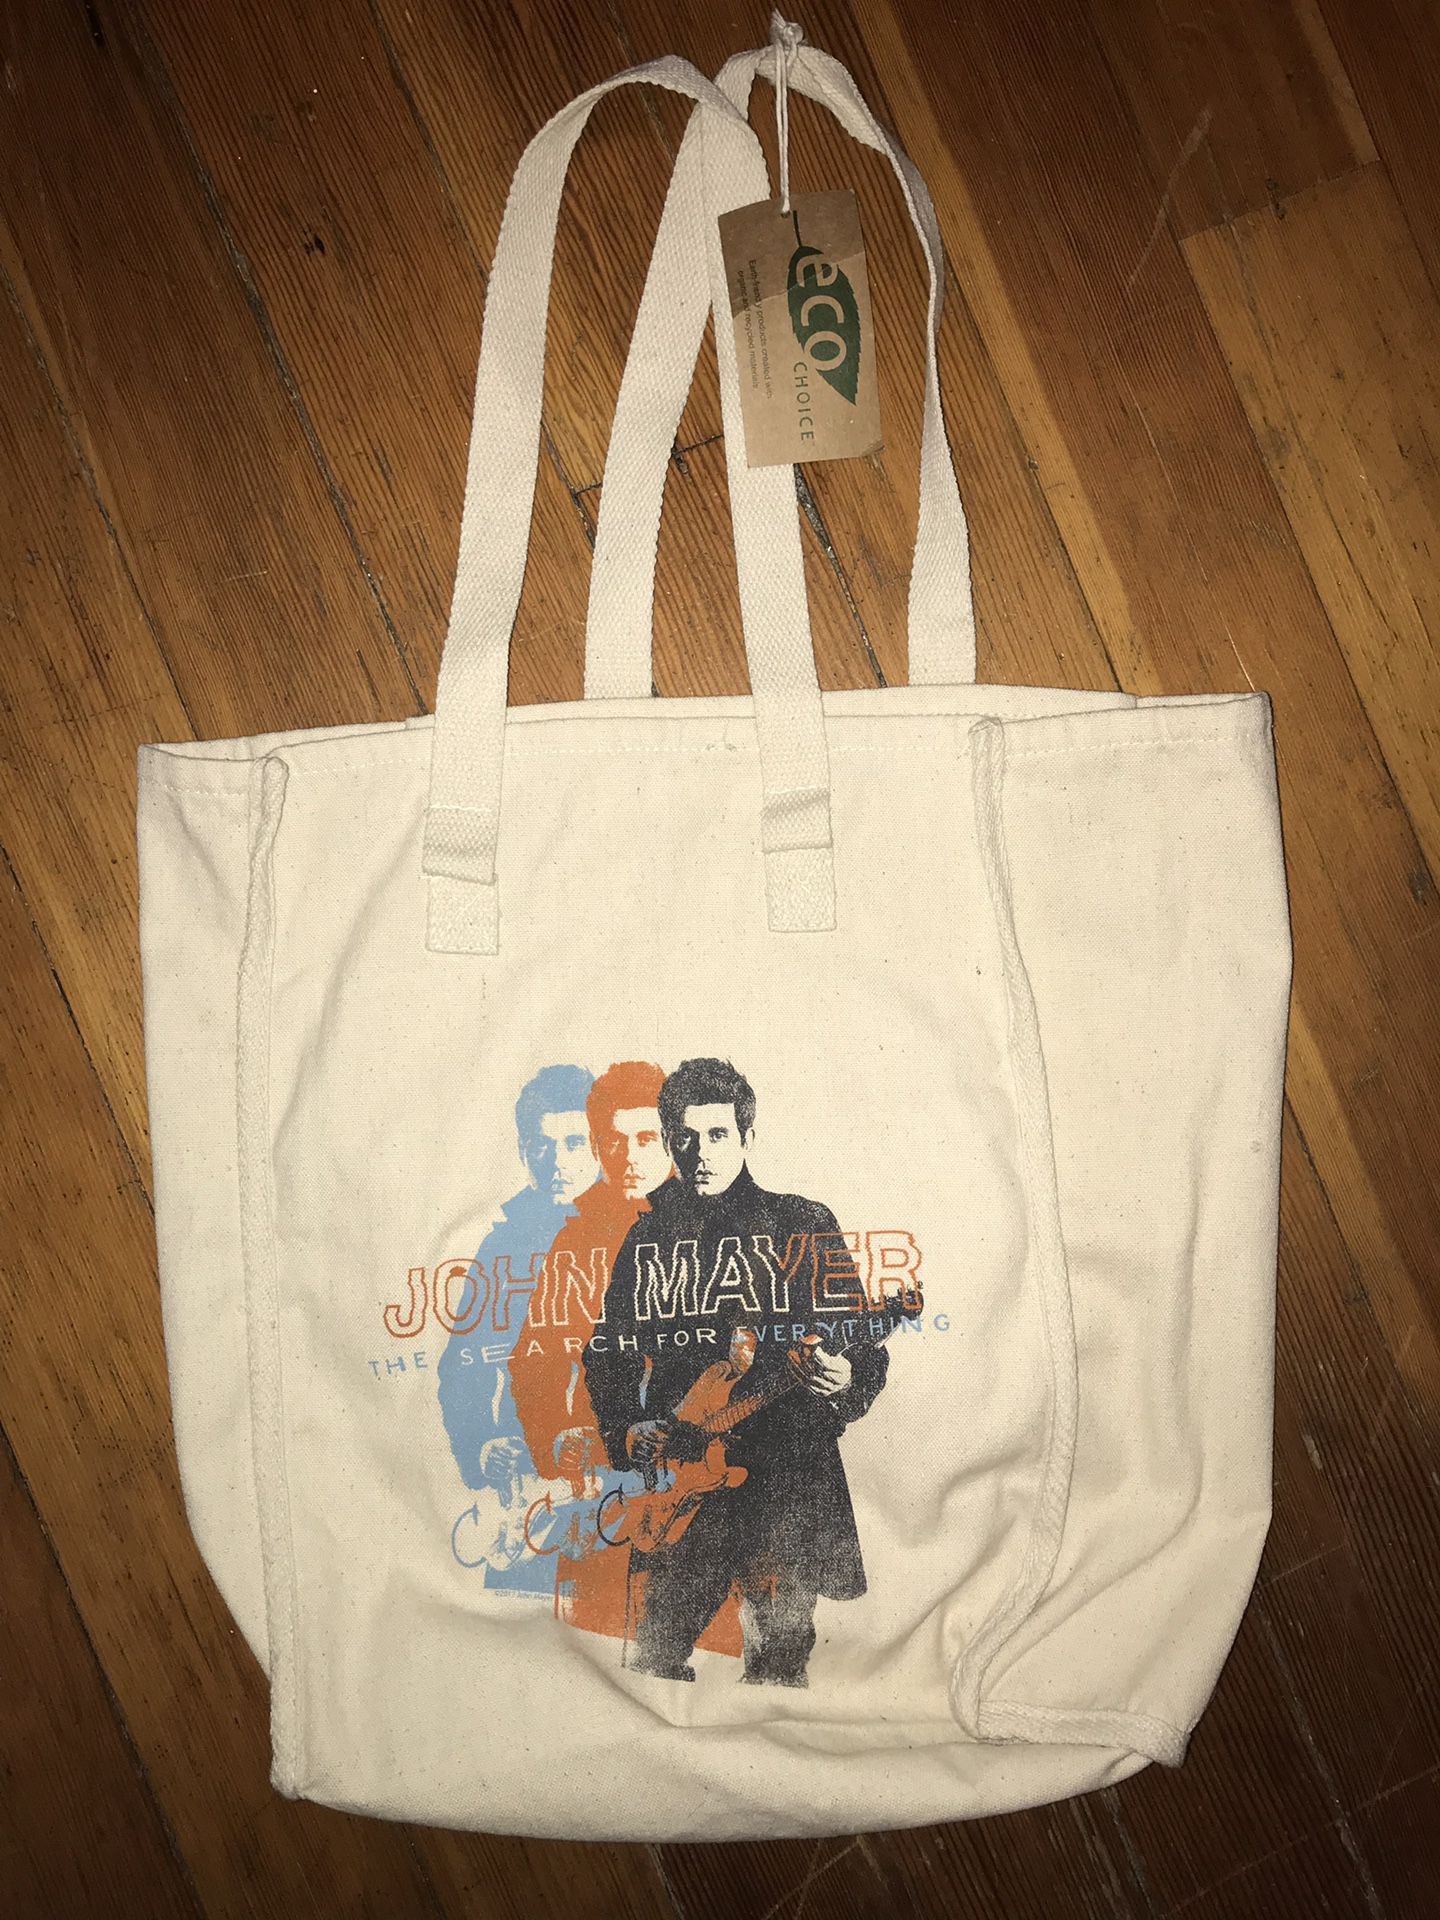 Brand new w/tags John Mayer tour tote bag